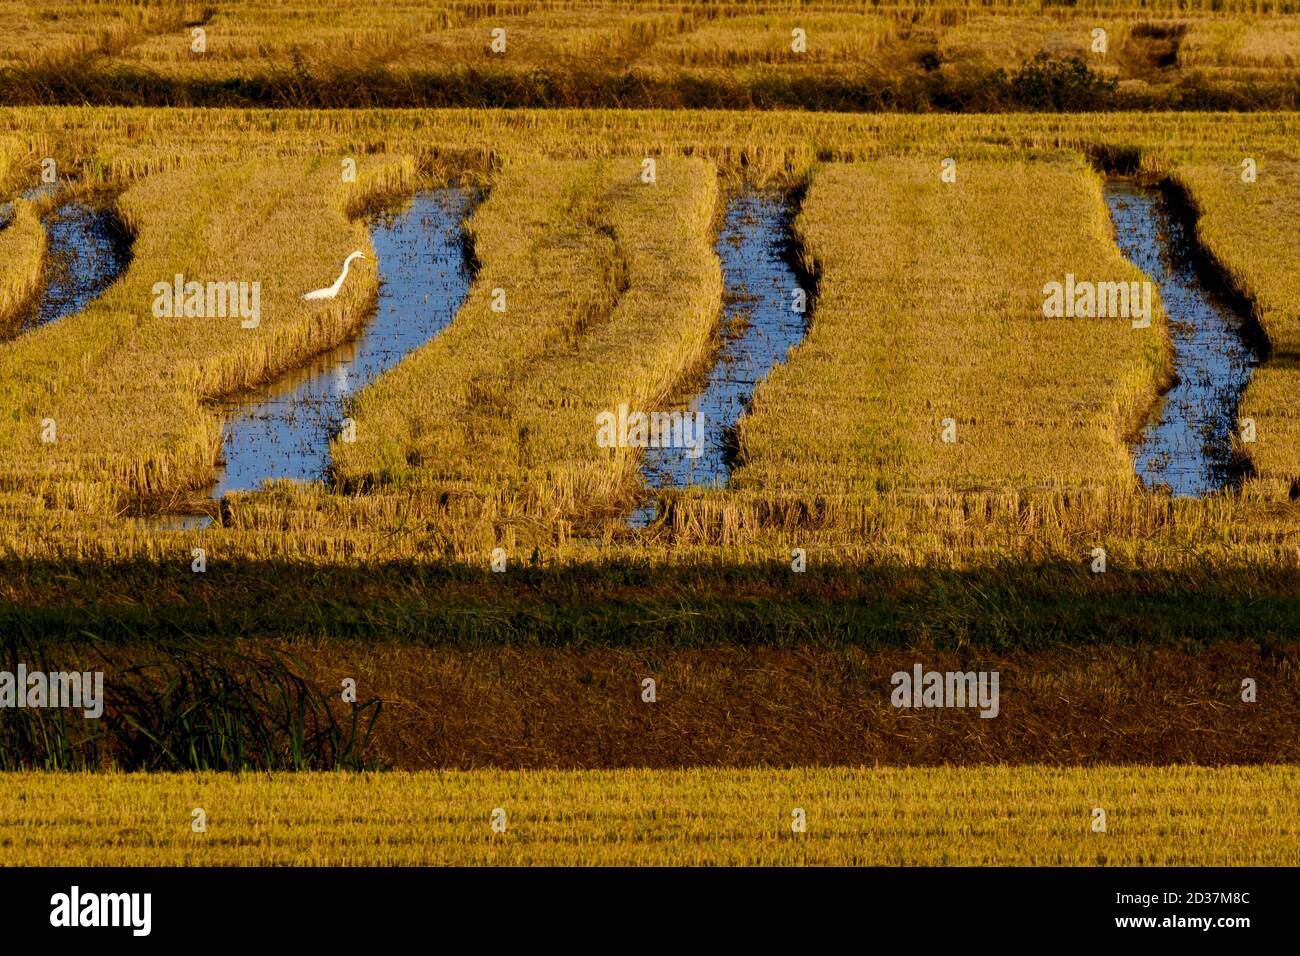 Panorama del arrozal italiano visto desde arriba con una garza caza Foto de stock